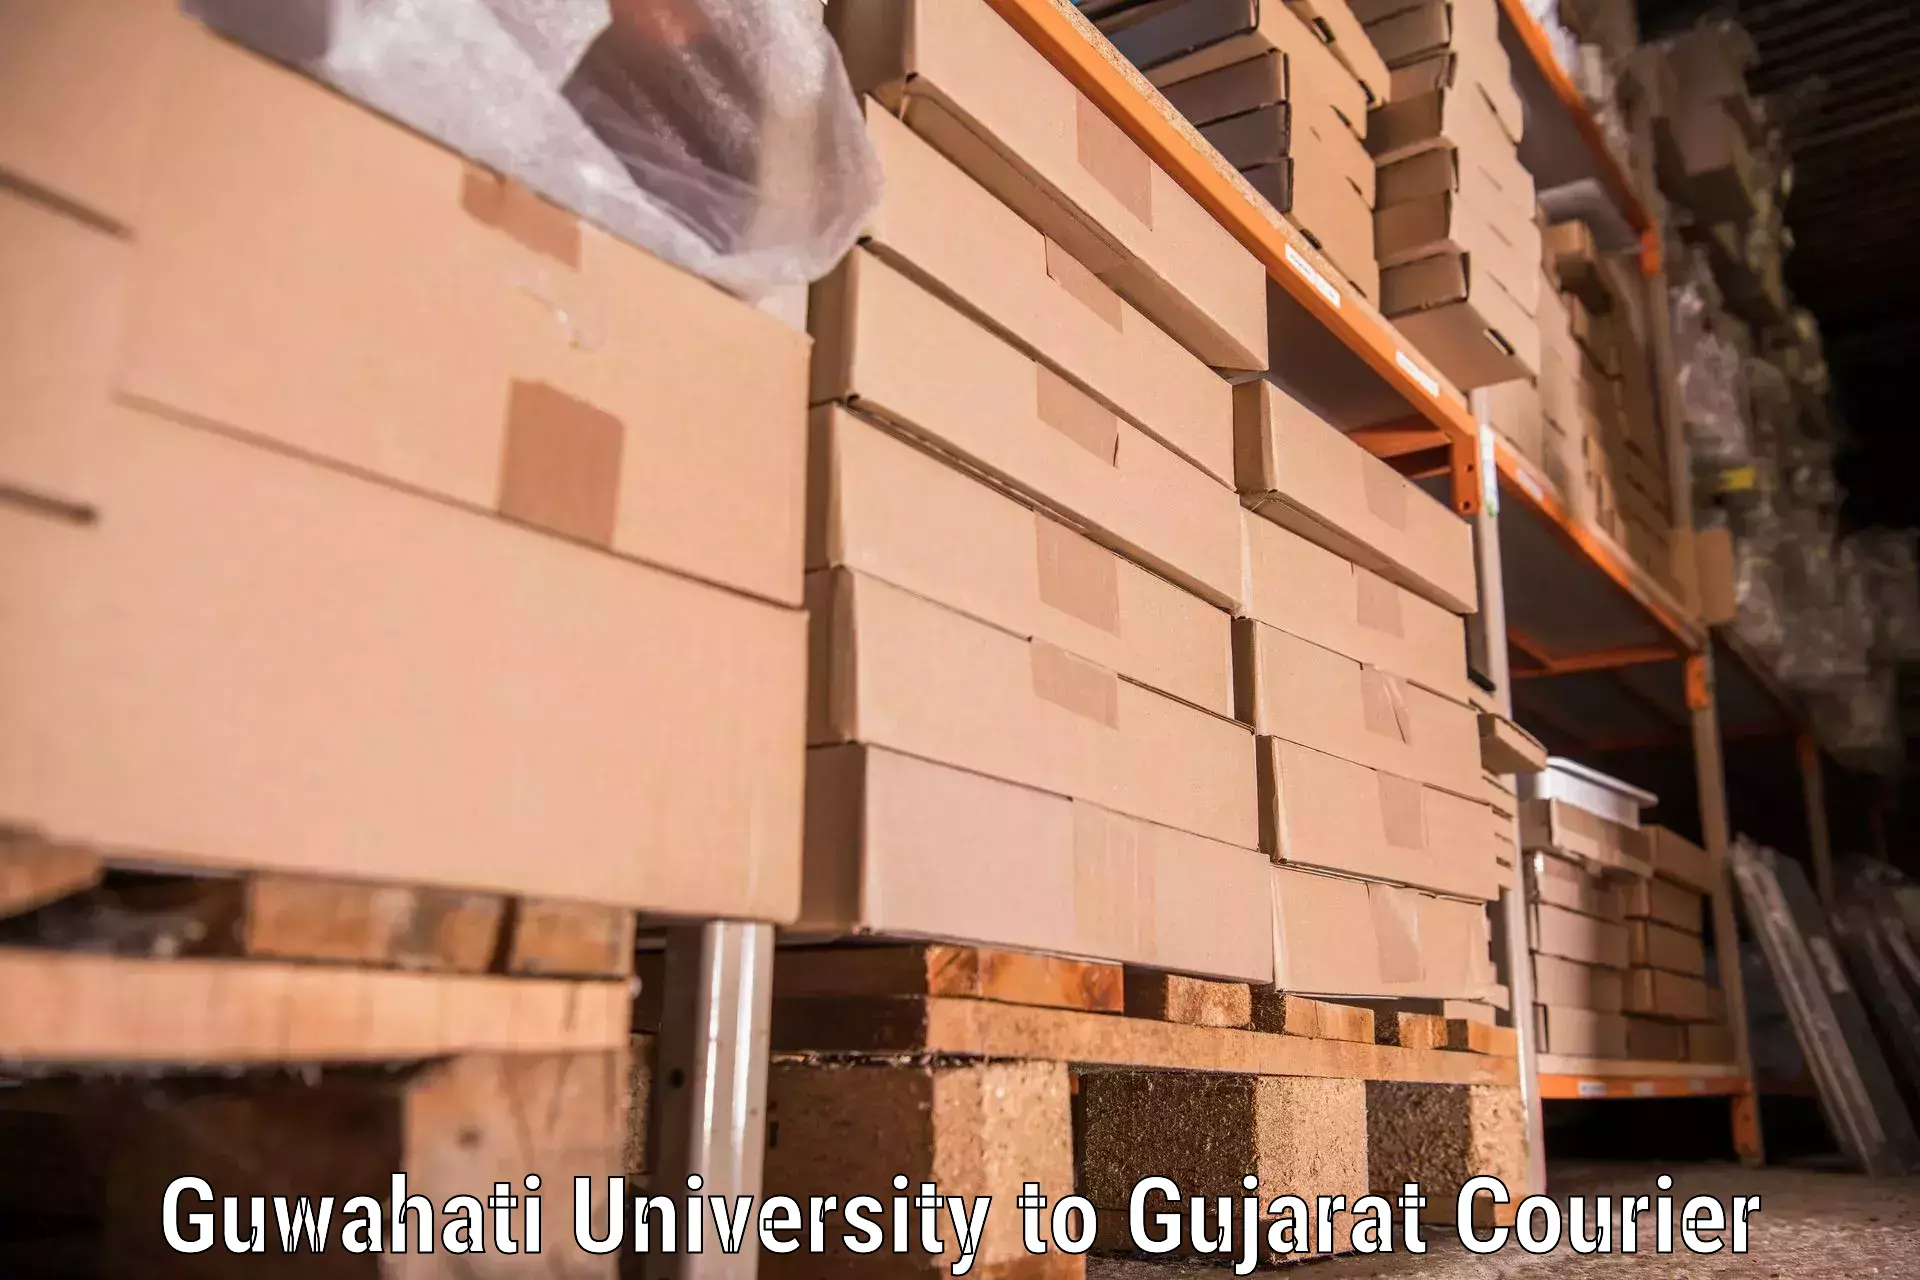 Quality moving company Guwahati University to Palanpur